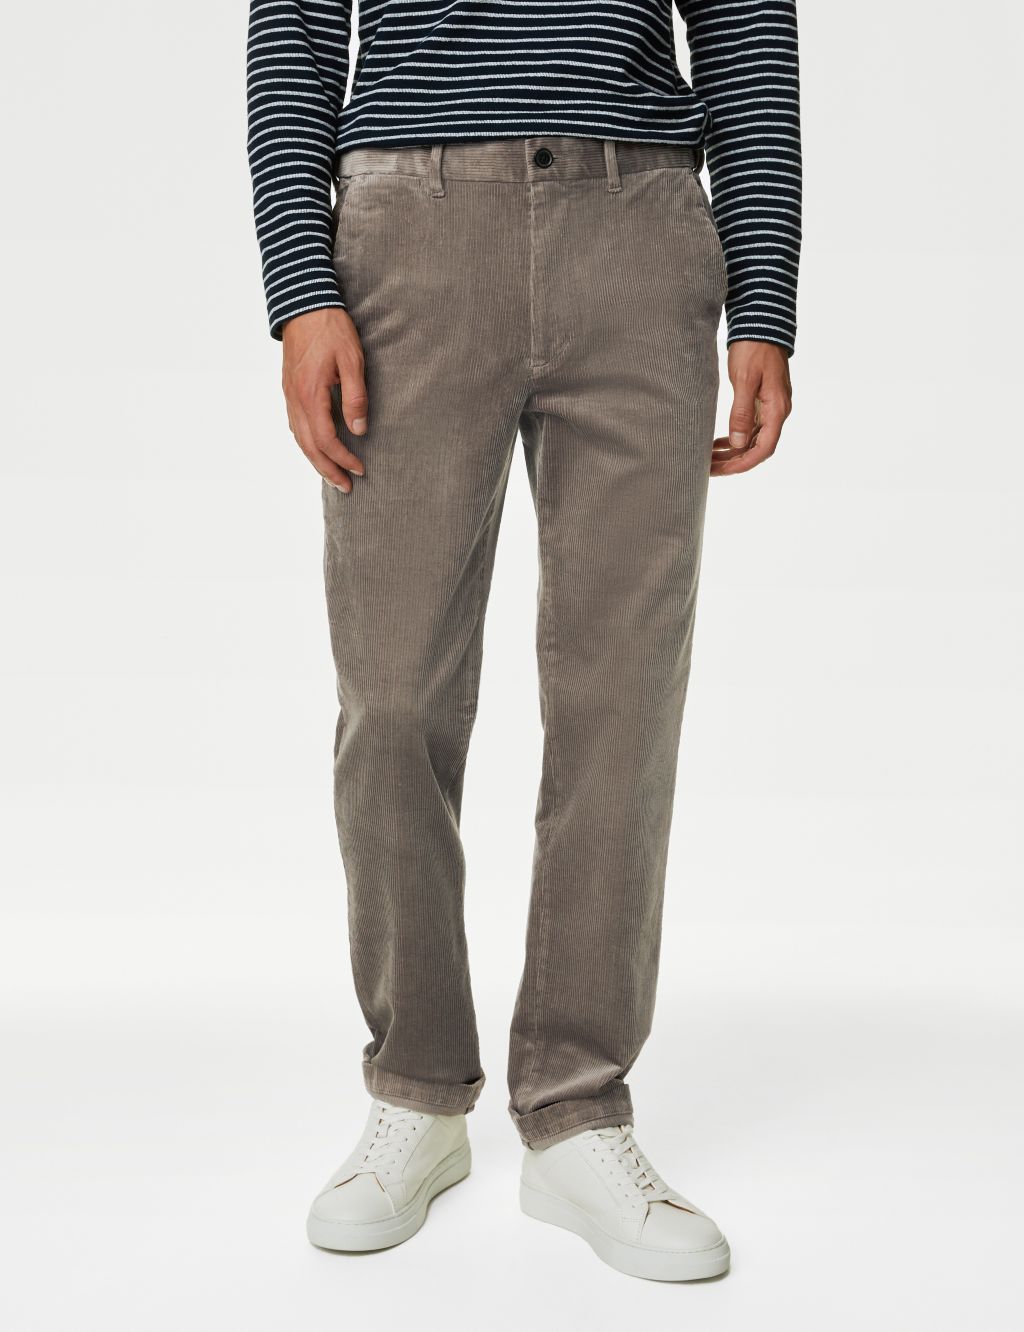 Single-pleat corduroy trousers